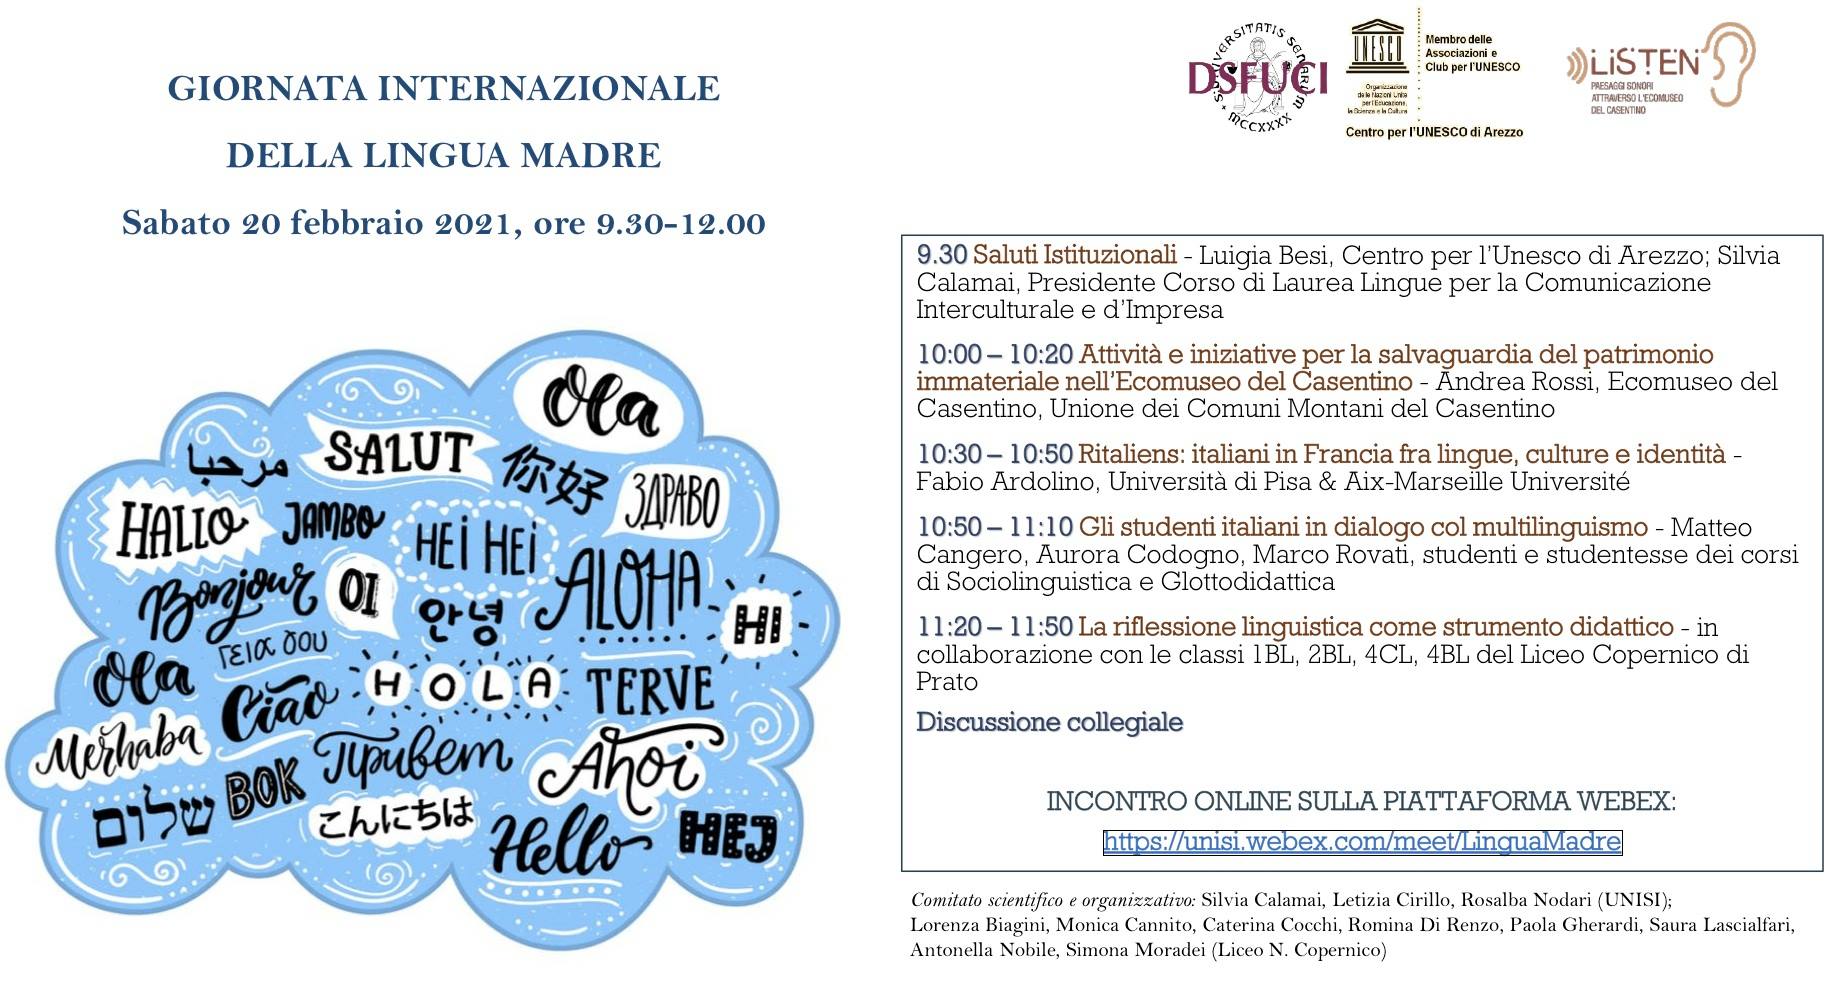 Giornata internazionale della lingua madre, un evento sull’identità linguistica il 20 febbraio all’Università di Siena